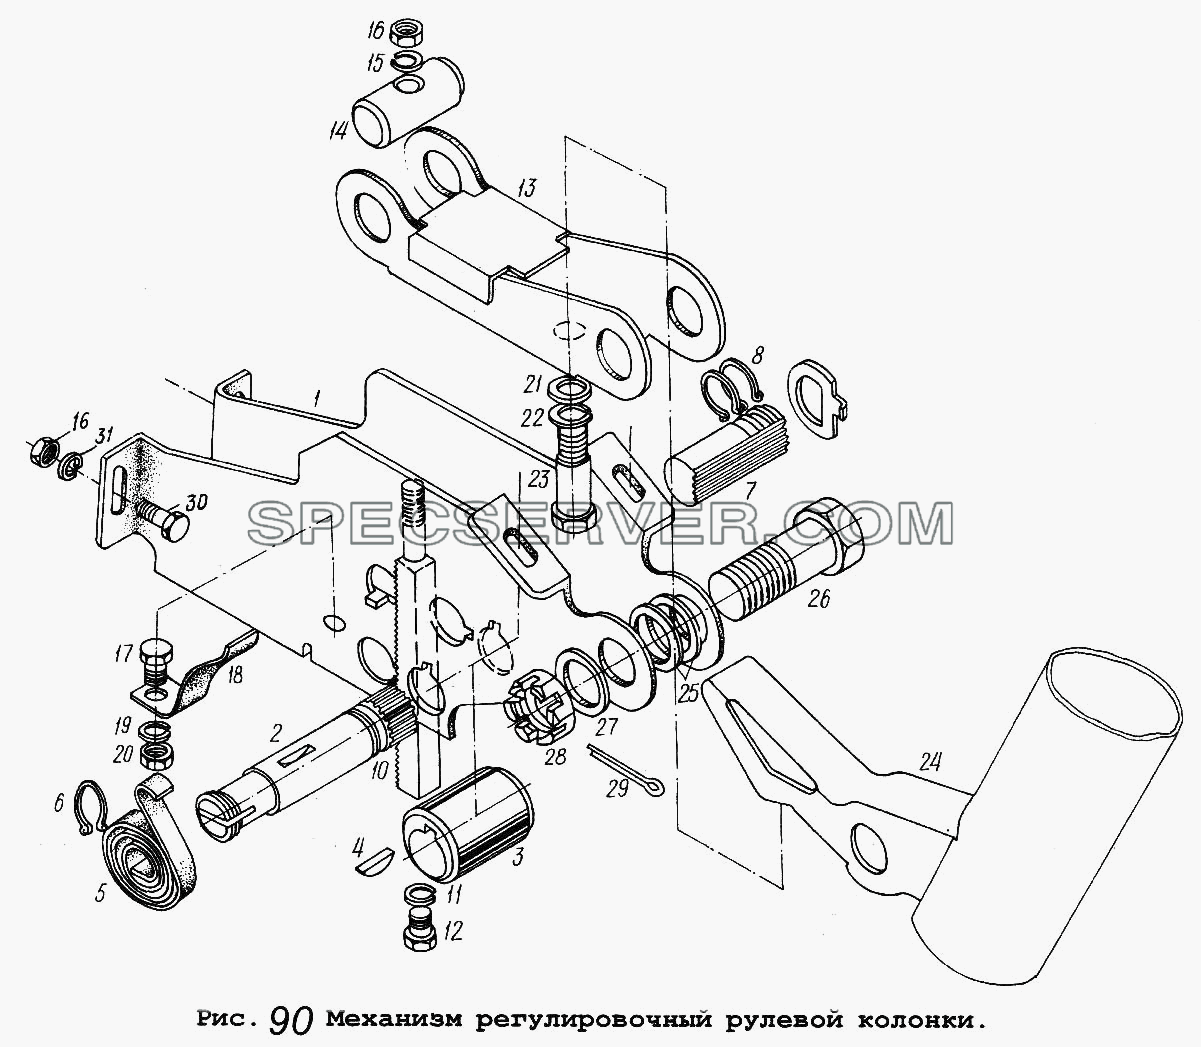 Механизм регулировочный рулевой колонки для МАЗ-64229 (список запасных частей)